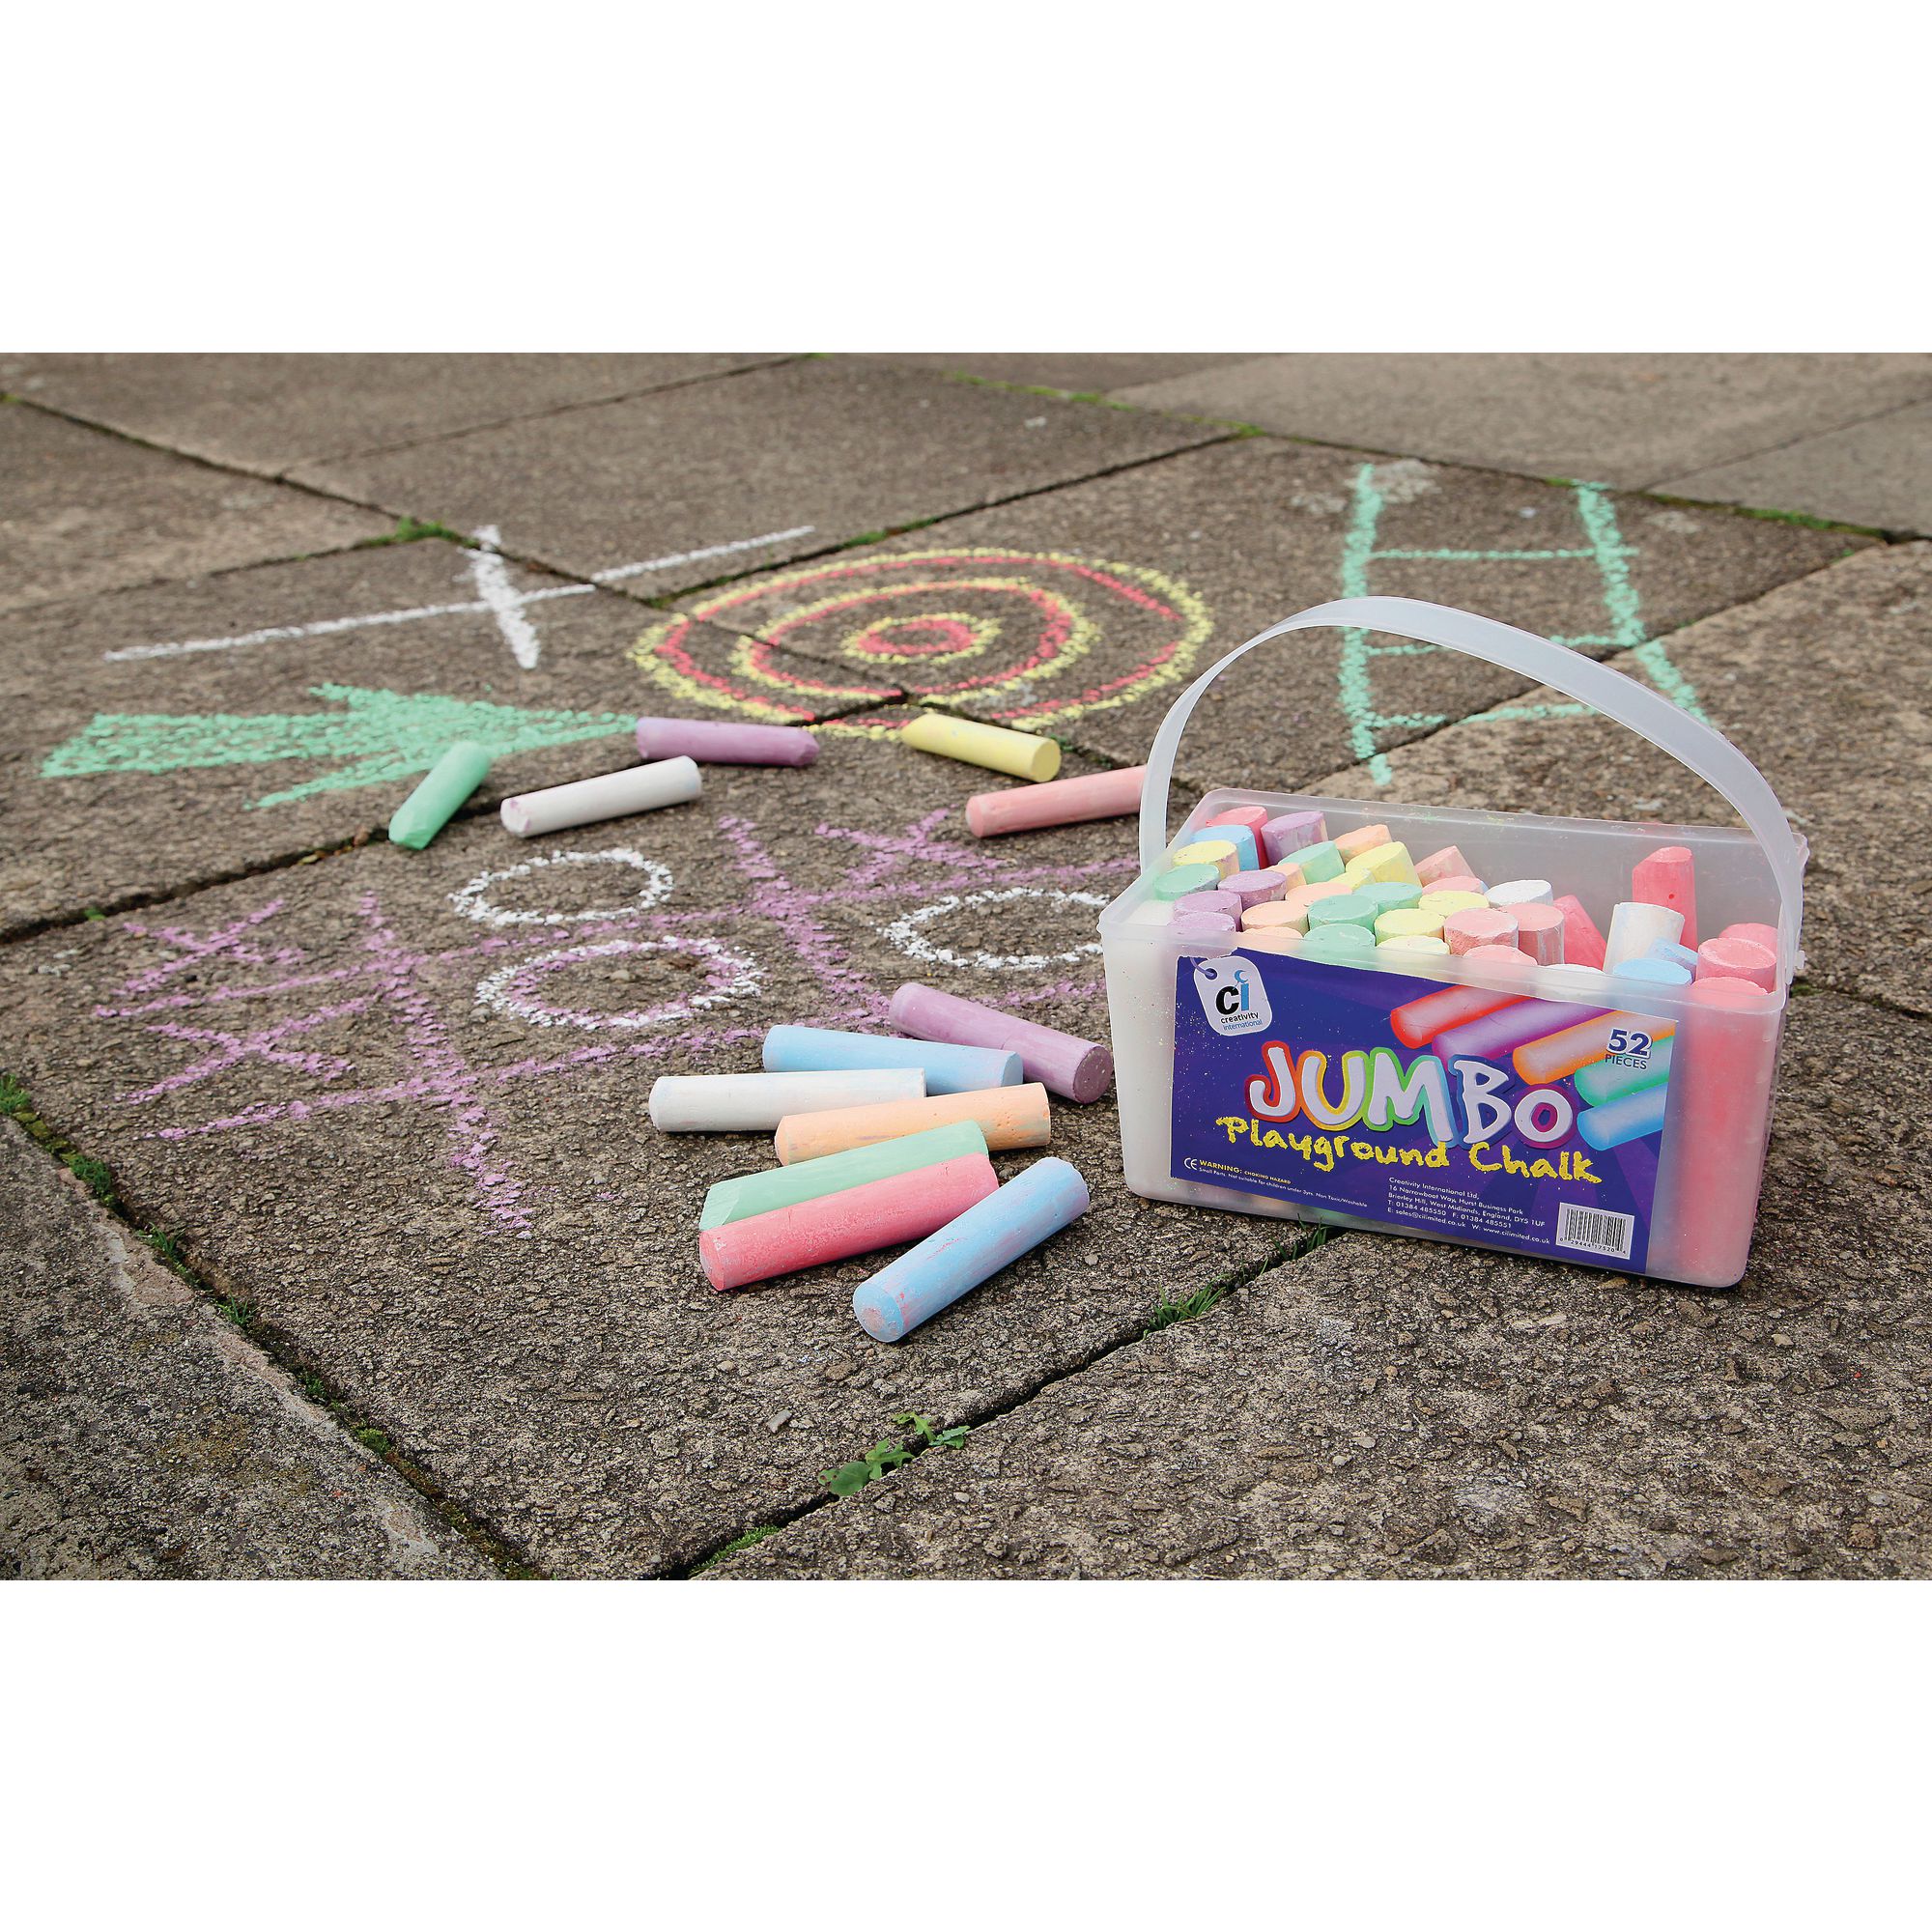 playground chalk